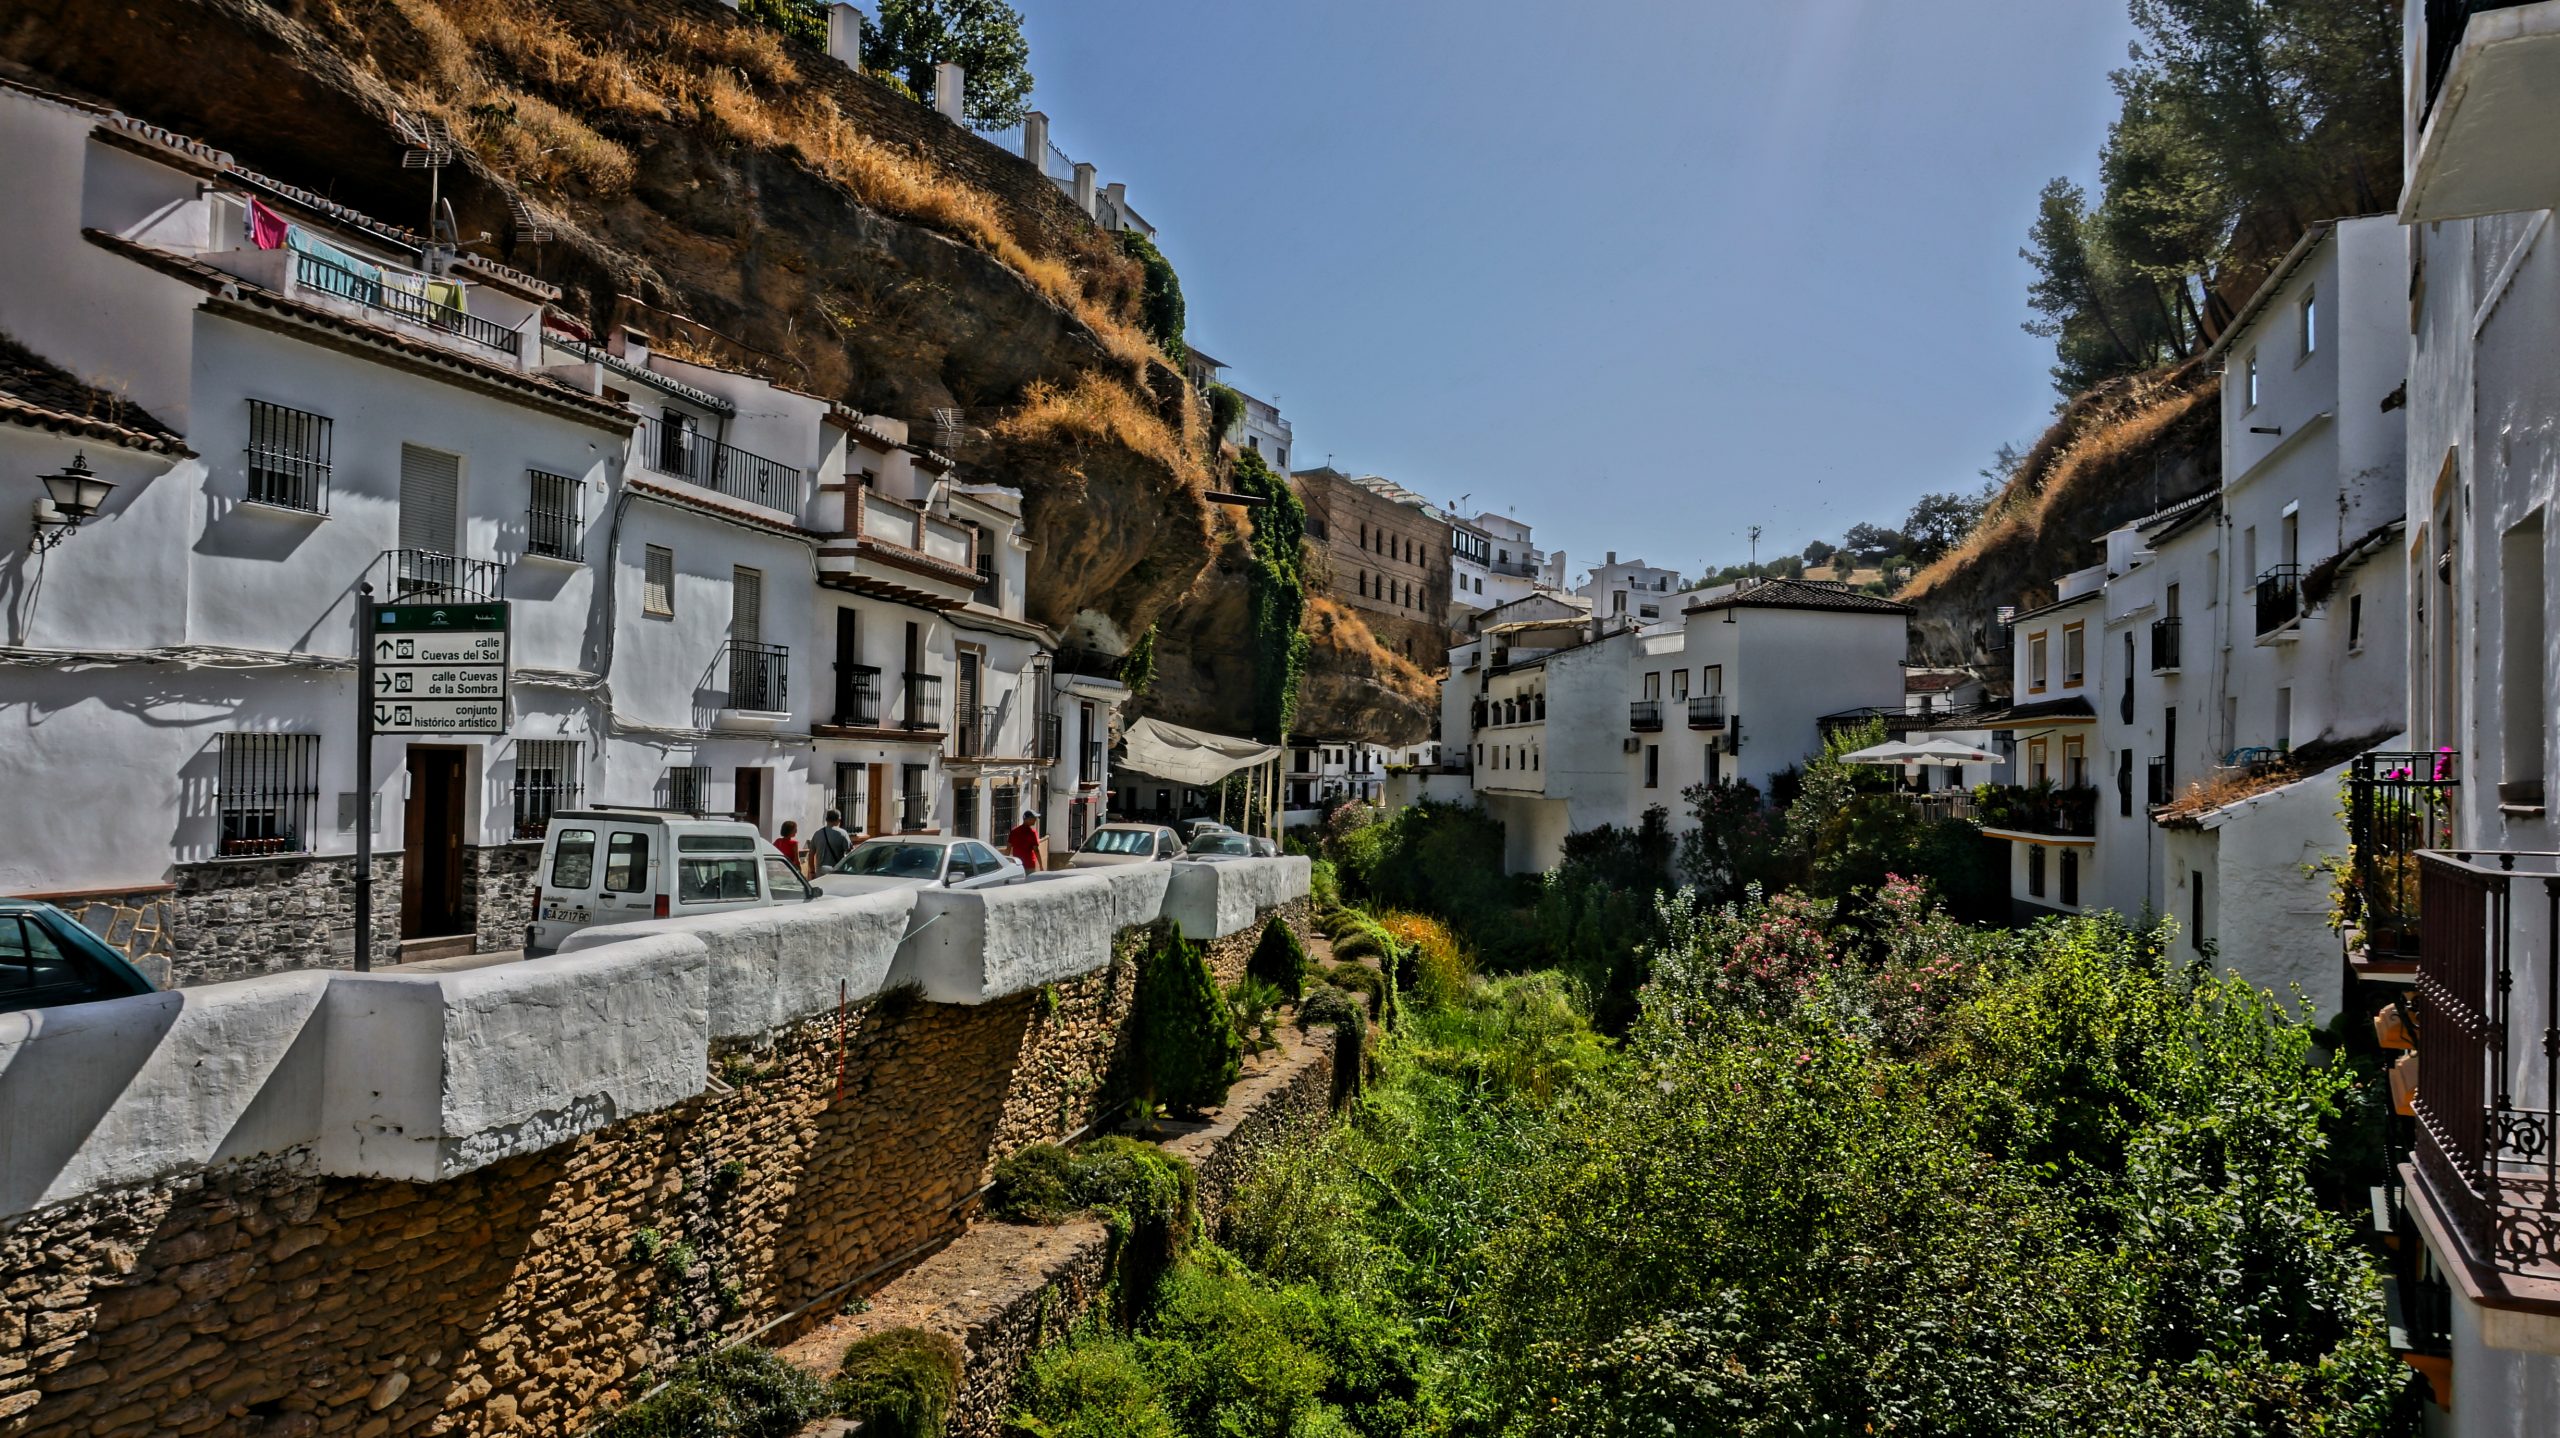 The little whitewashed village built into the rocks: Setenil de las Bodegas